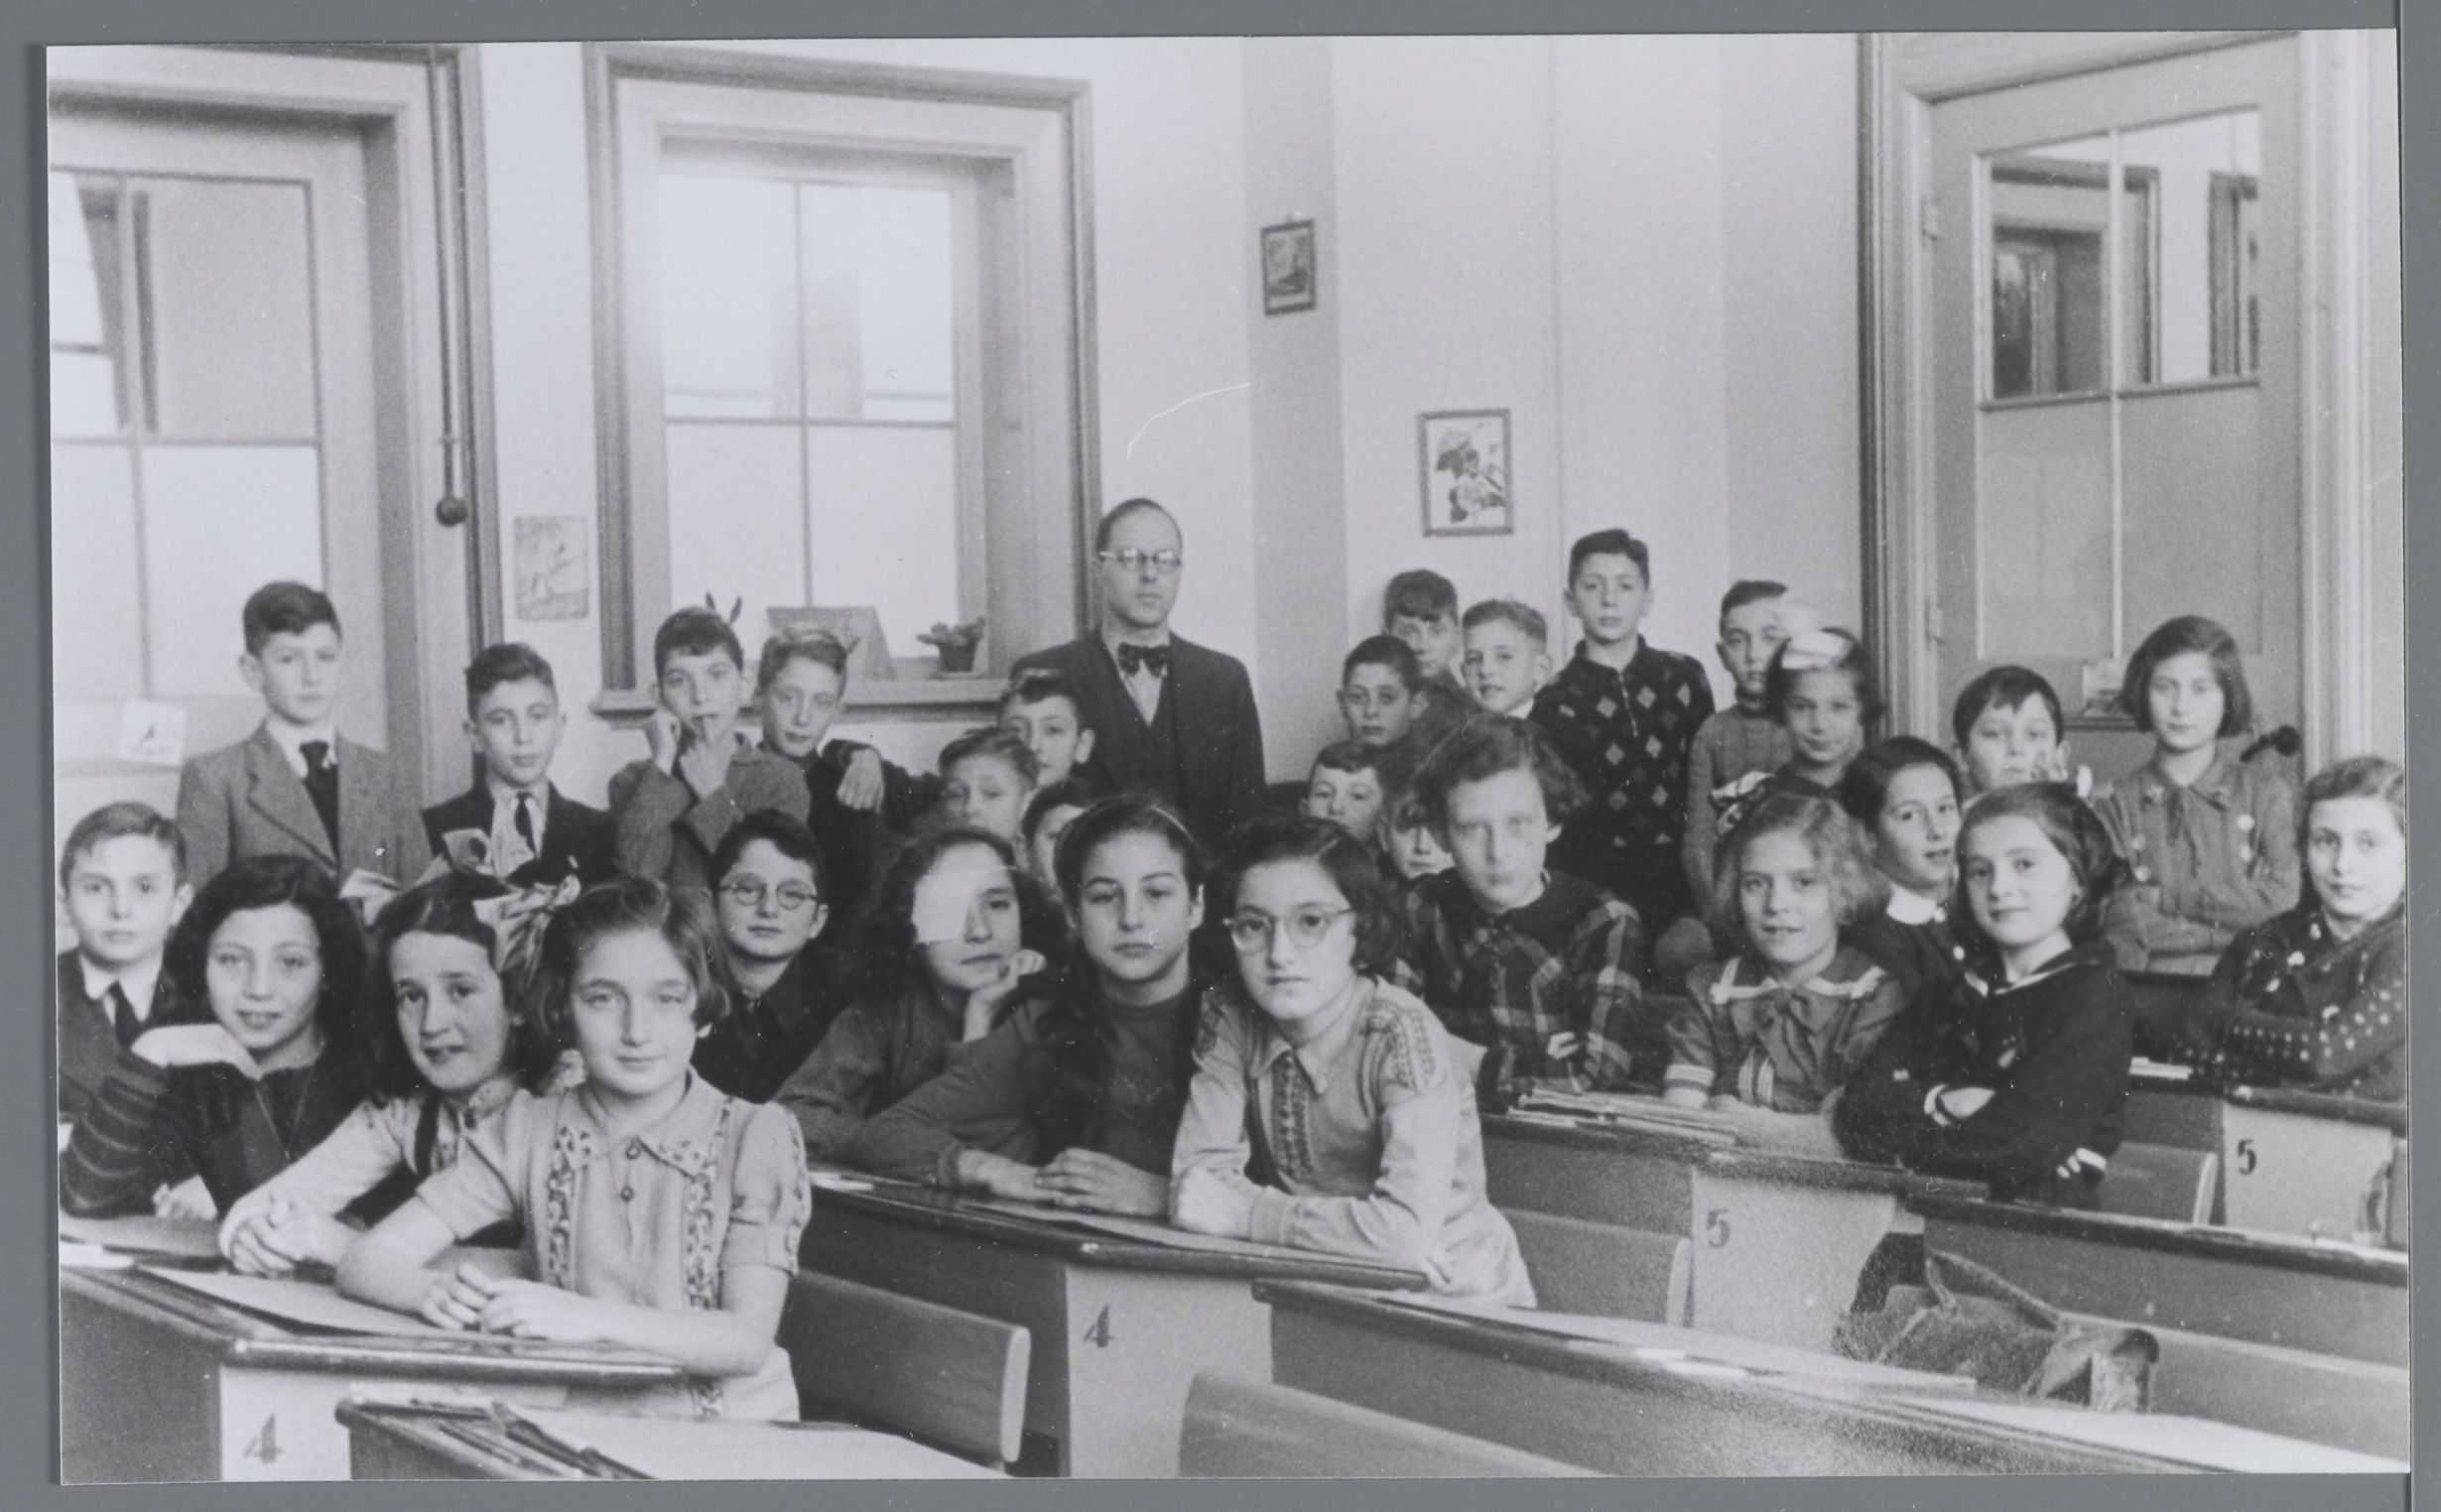 Klassenfoto van de Joodse school aan de Molenwaterweg in Rotterdam, circa 1941-1942. Collectie: Joods Historisch Museum. 